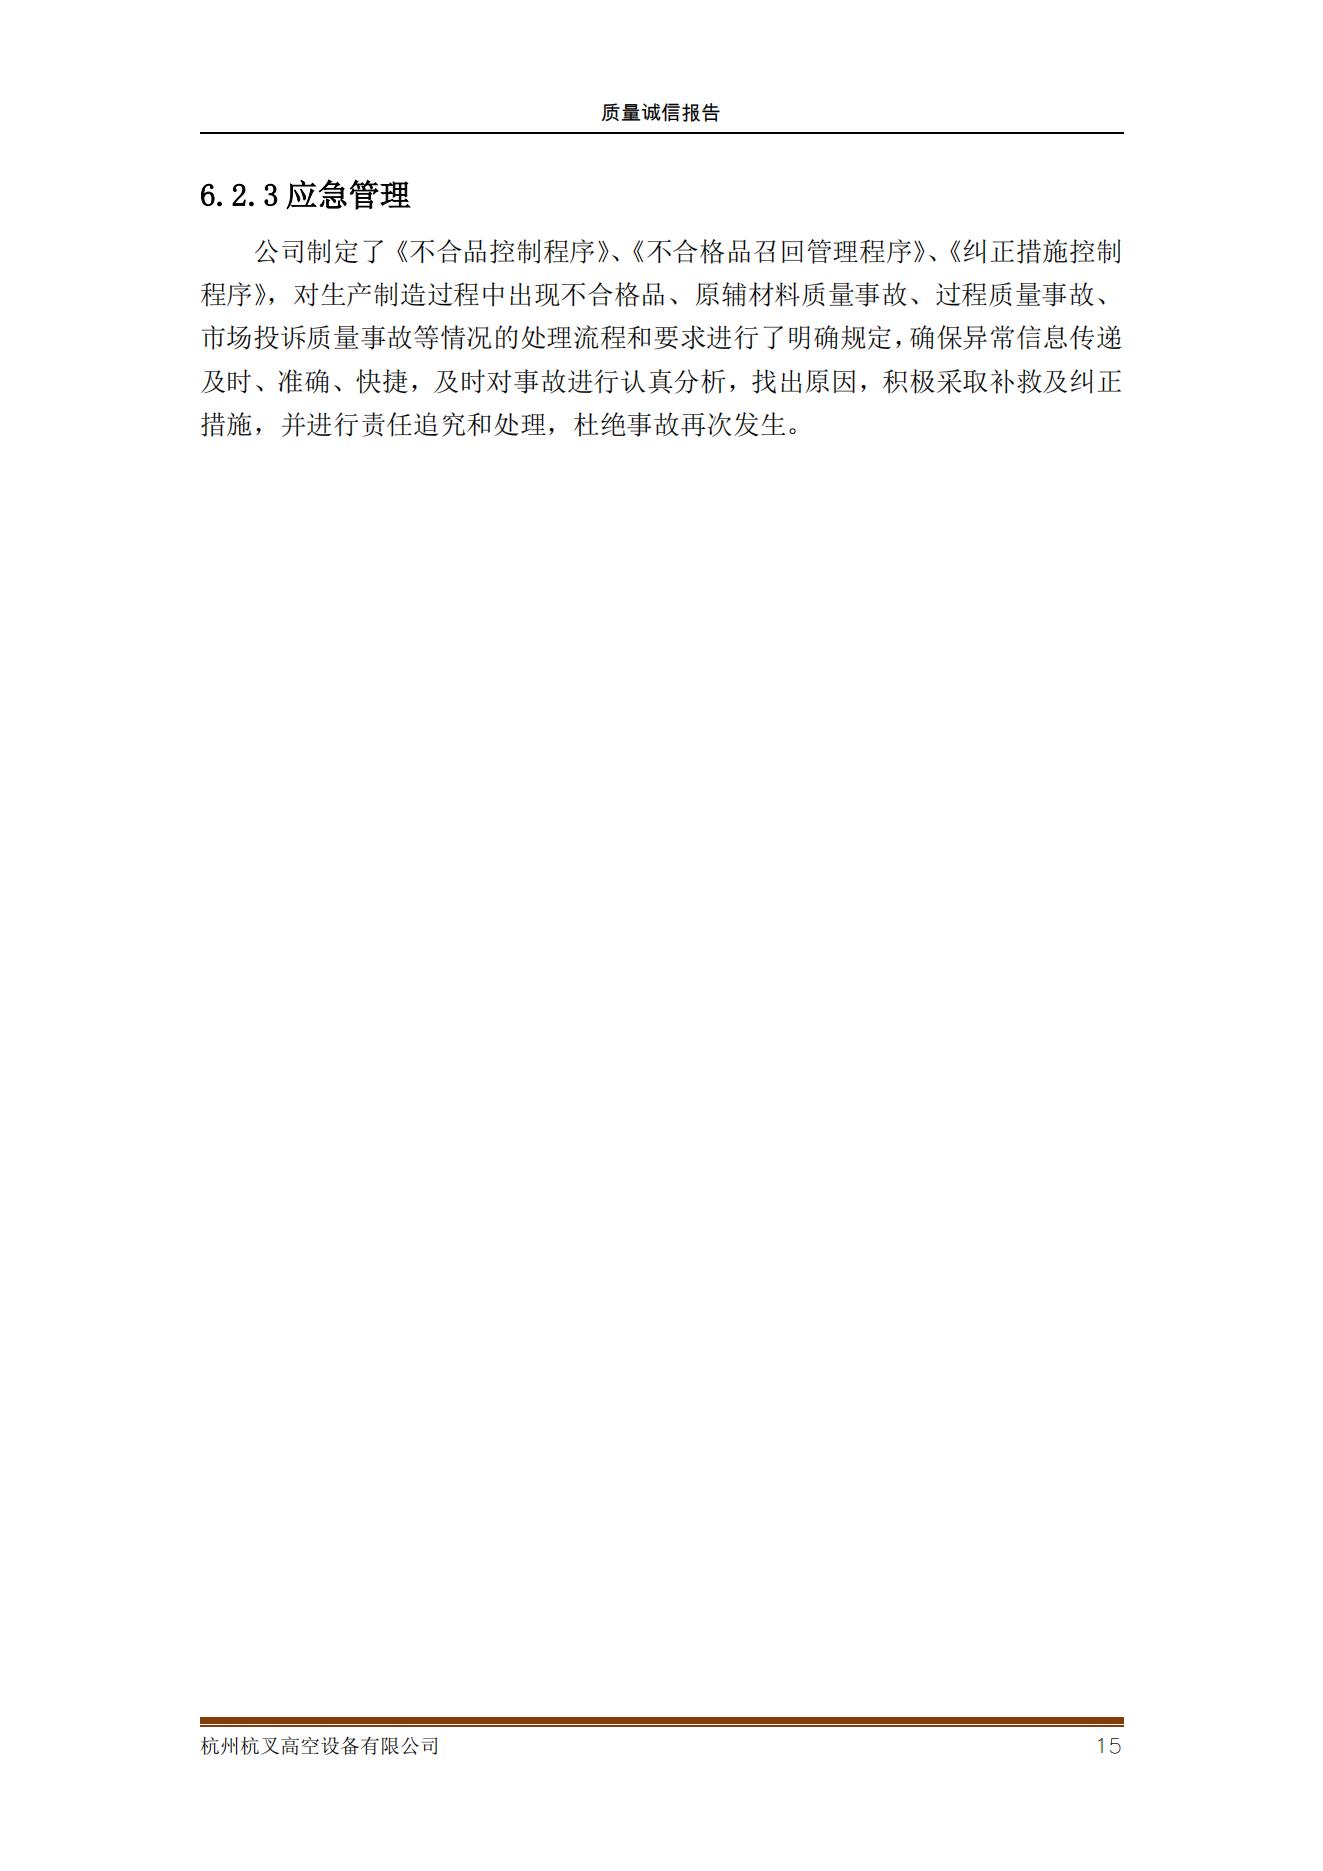 杭州杭叉高空設備公司2021年質量誠信報告(圖15)